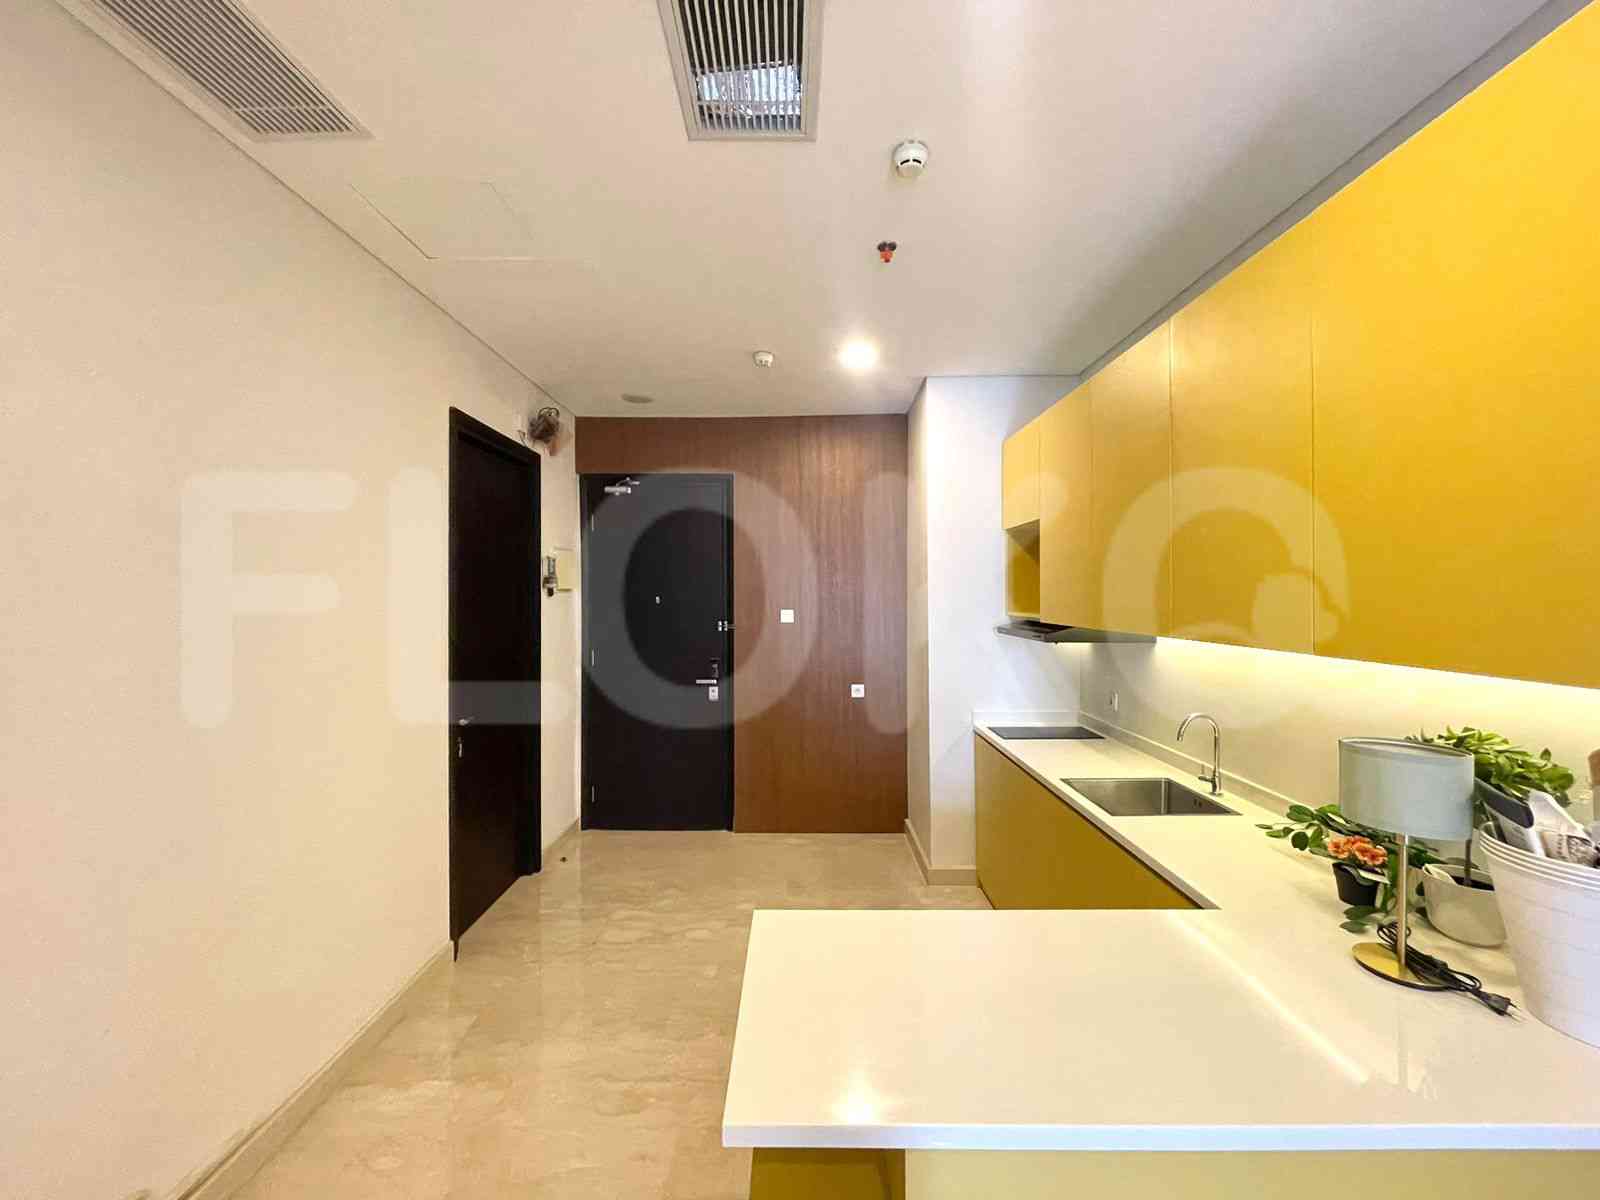 2 Bedroom on 15th Floor for Rent in Sudirman Suites Jakarta - fsu806 2